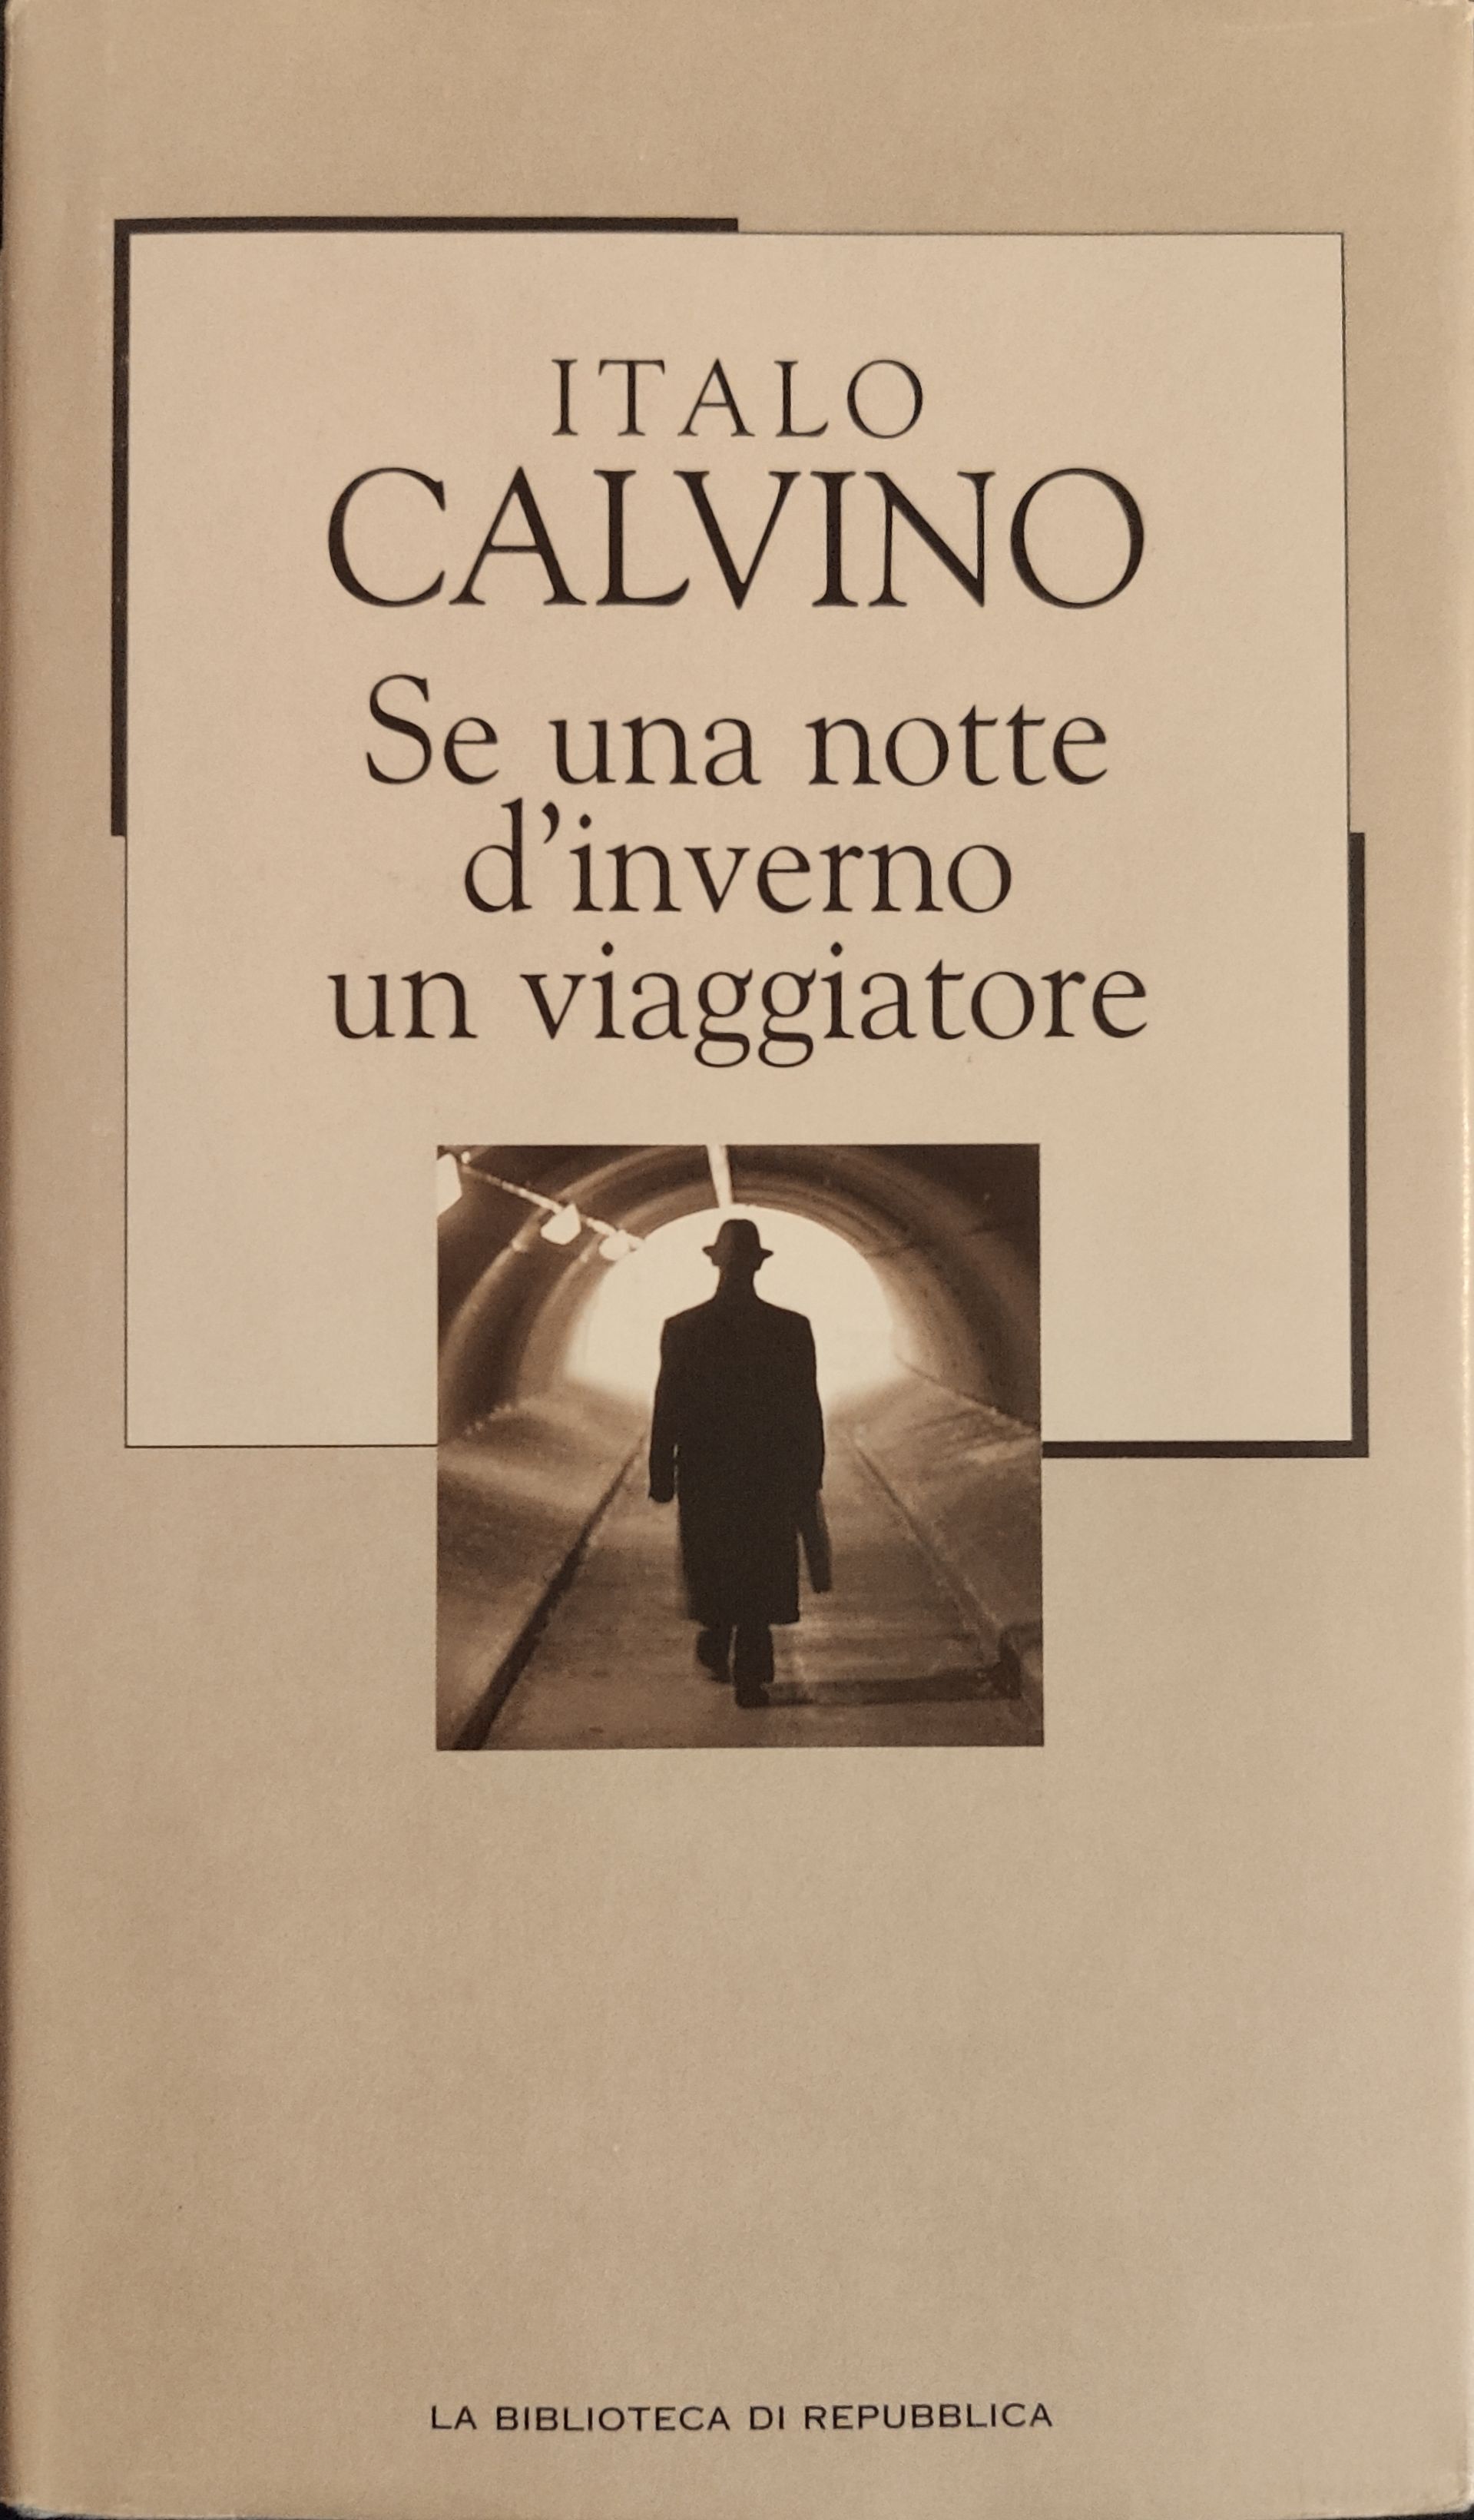 Italo Calvino: Se una notte d'inverno un viaggiatore (Hardcover, Italiano language, 2002, Gruppo Editoriale L'Espresso SpA - Divisione la Repubblica)